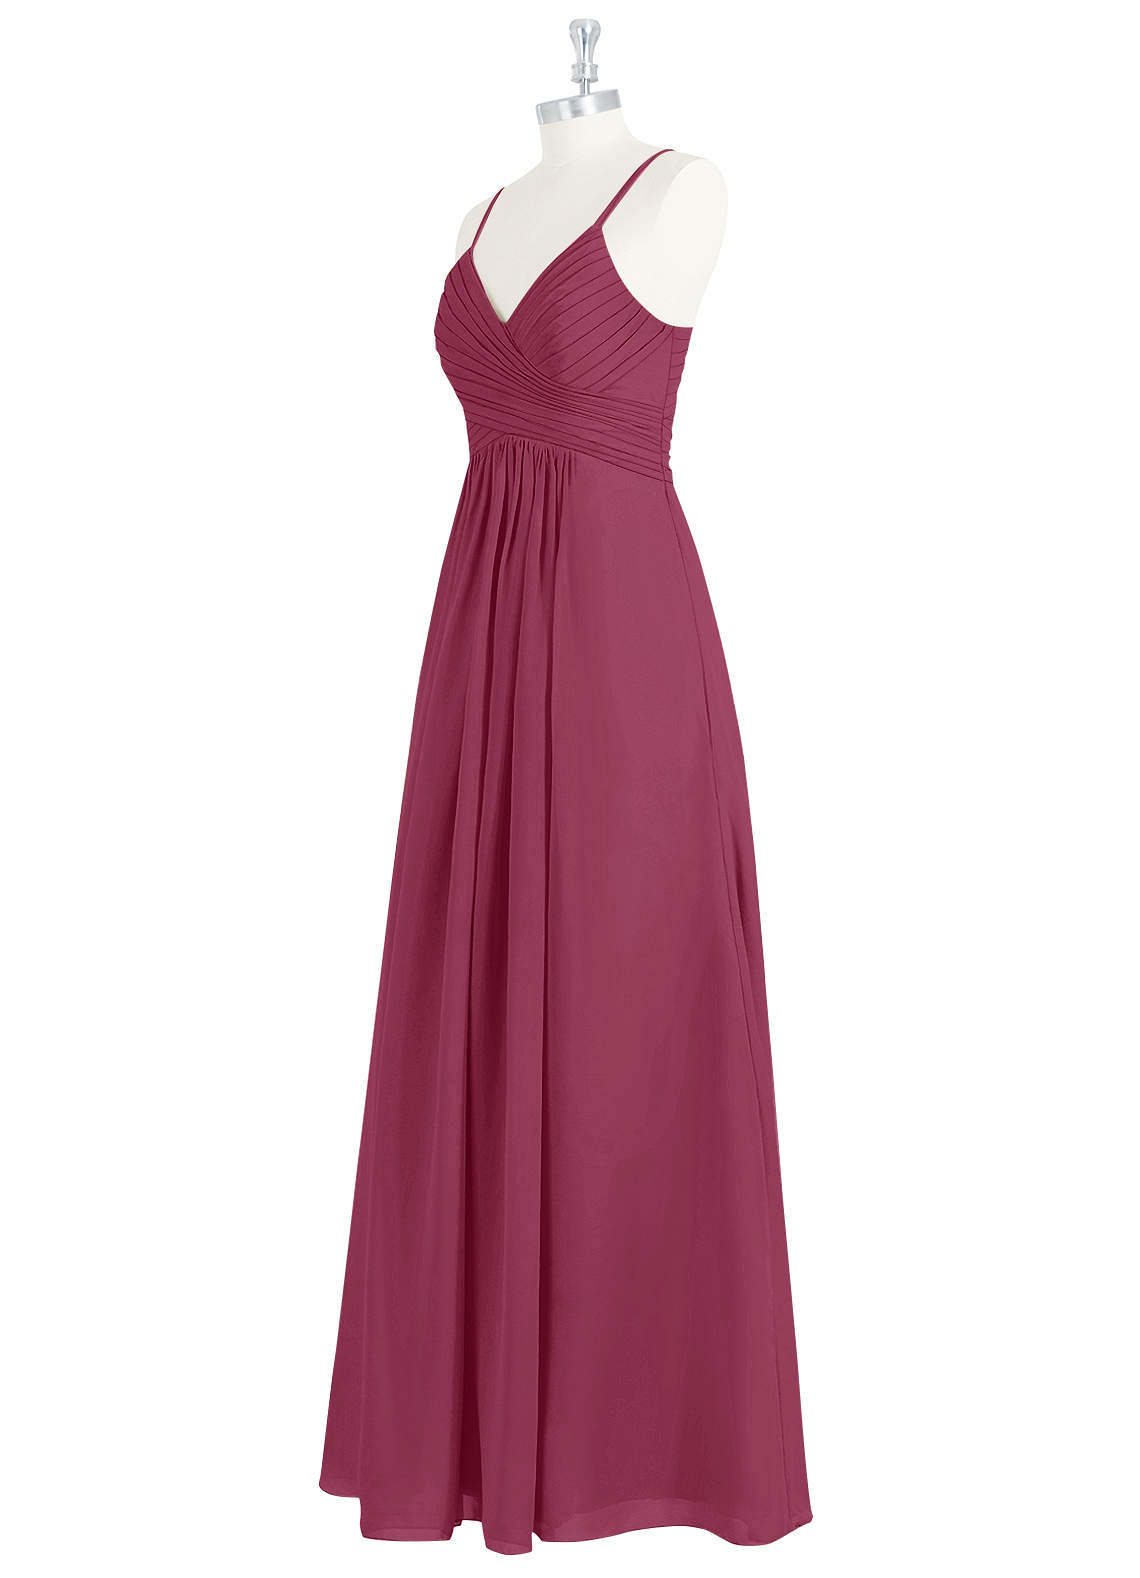 Azazie Haleigh Bridesmaid Dresses A-Line Pleated Chiffon Floor-Length Dress image1